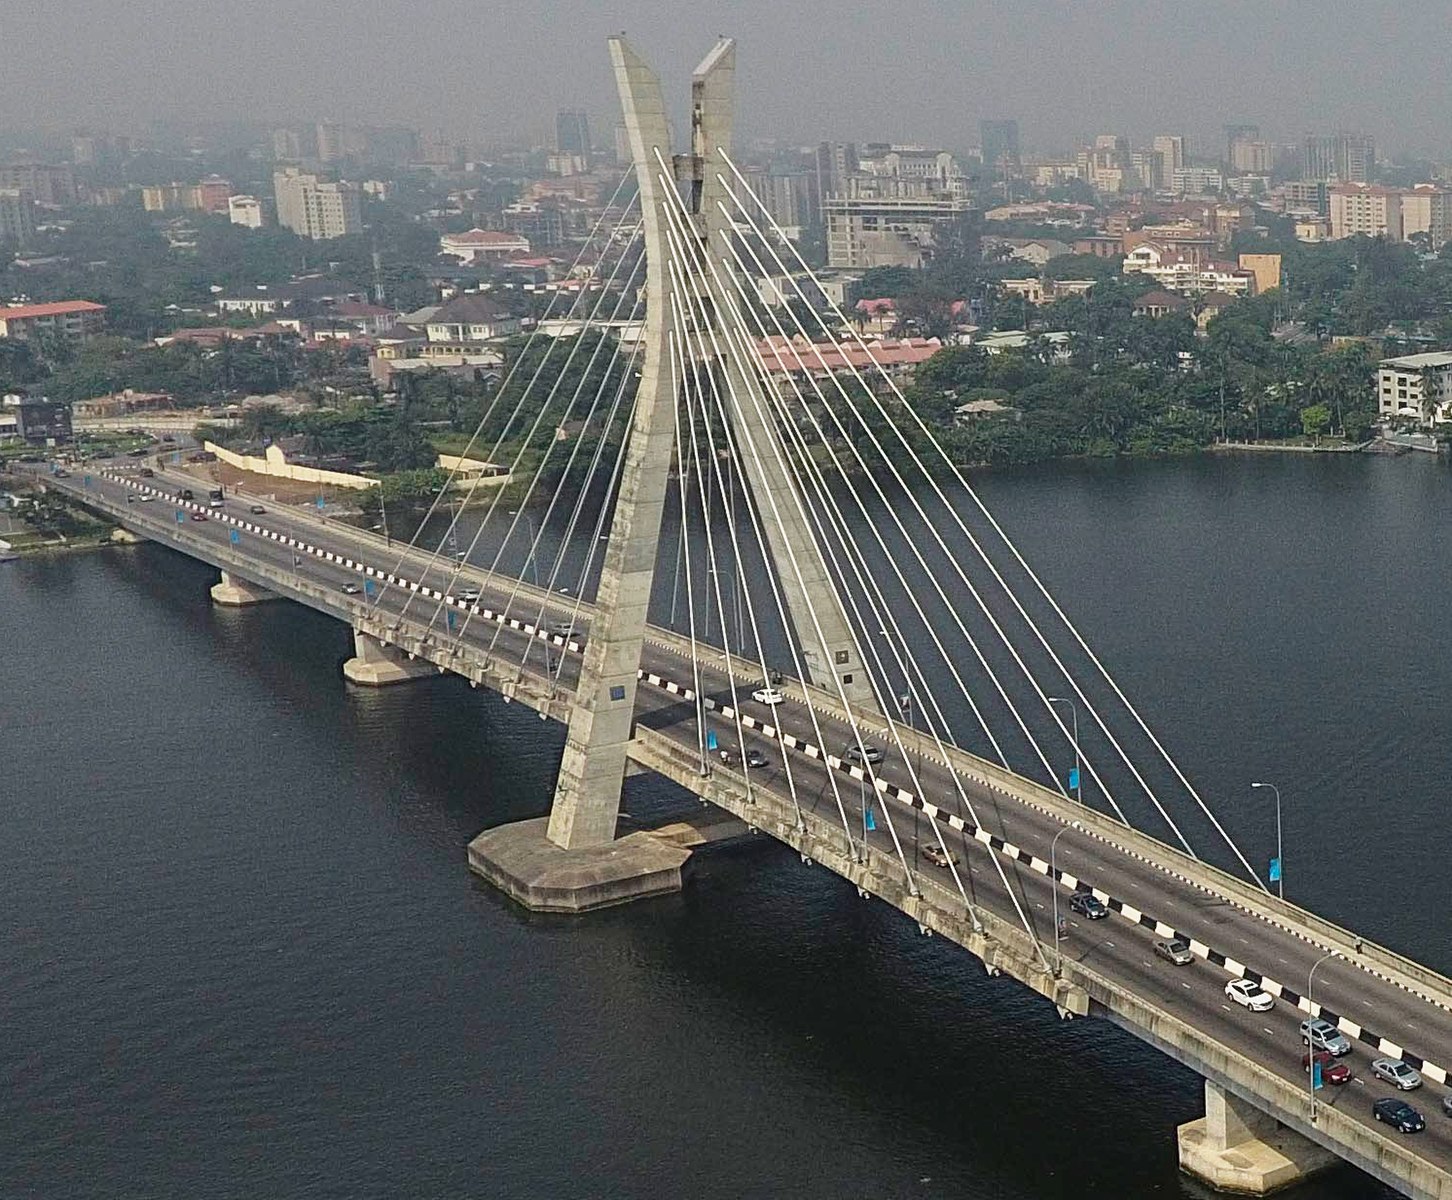 Lekki-Ikoyi Bridge, Lagos